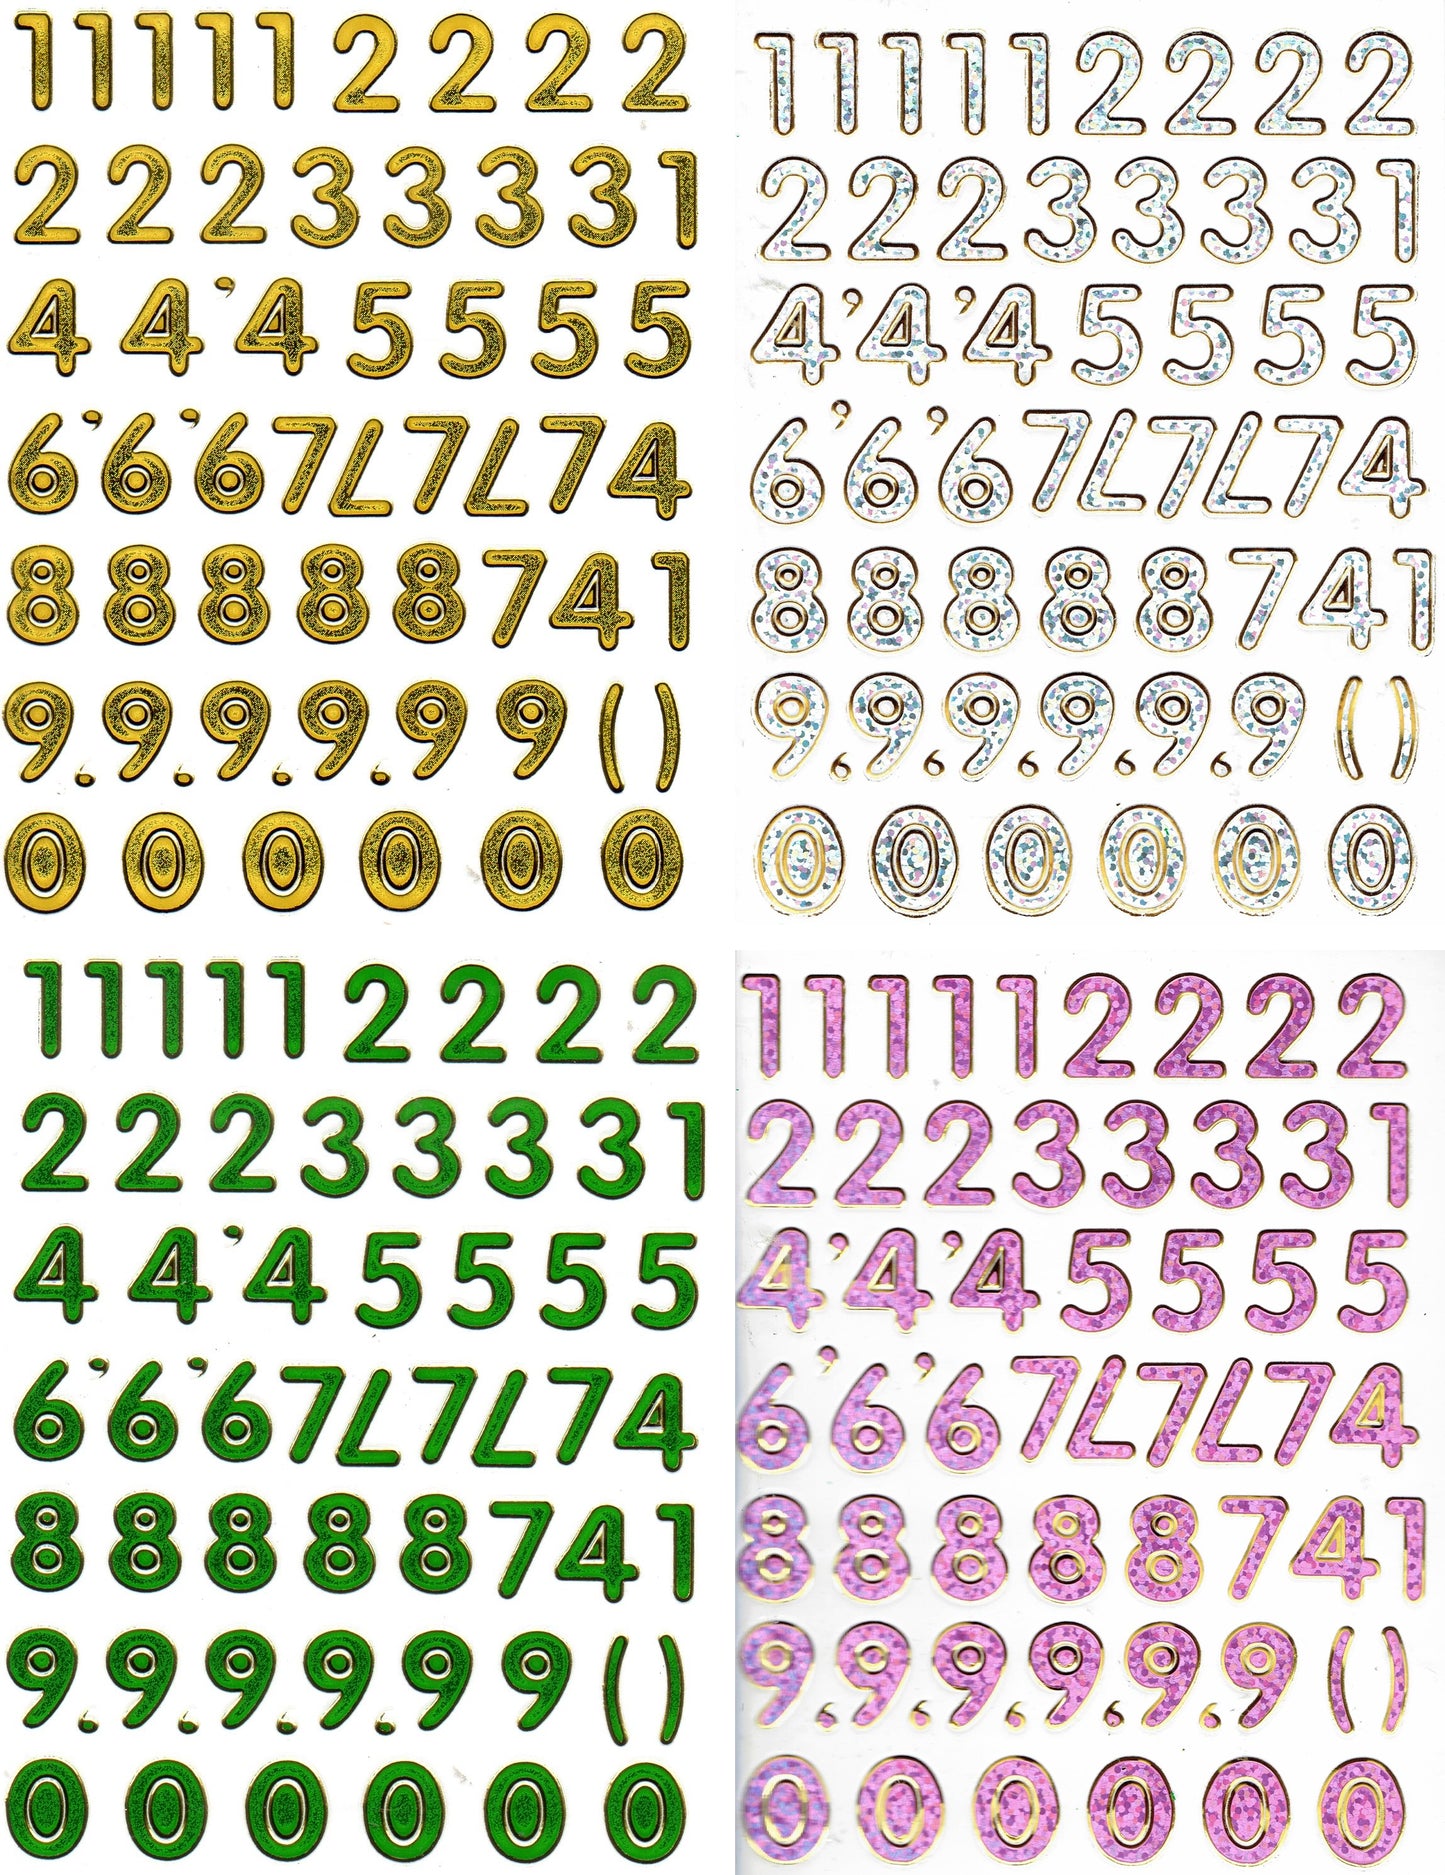 4 Bogen Promotion Set Zahlen 123 bunt Aufkleber Sticker metallic Glitzer Effekt Schule Kinder Basteln Kindergarten